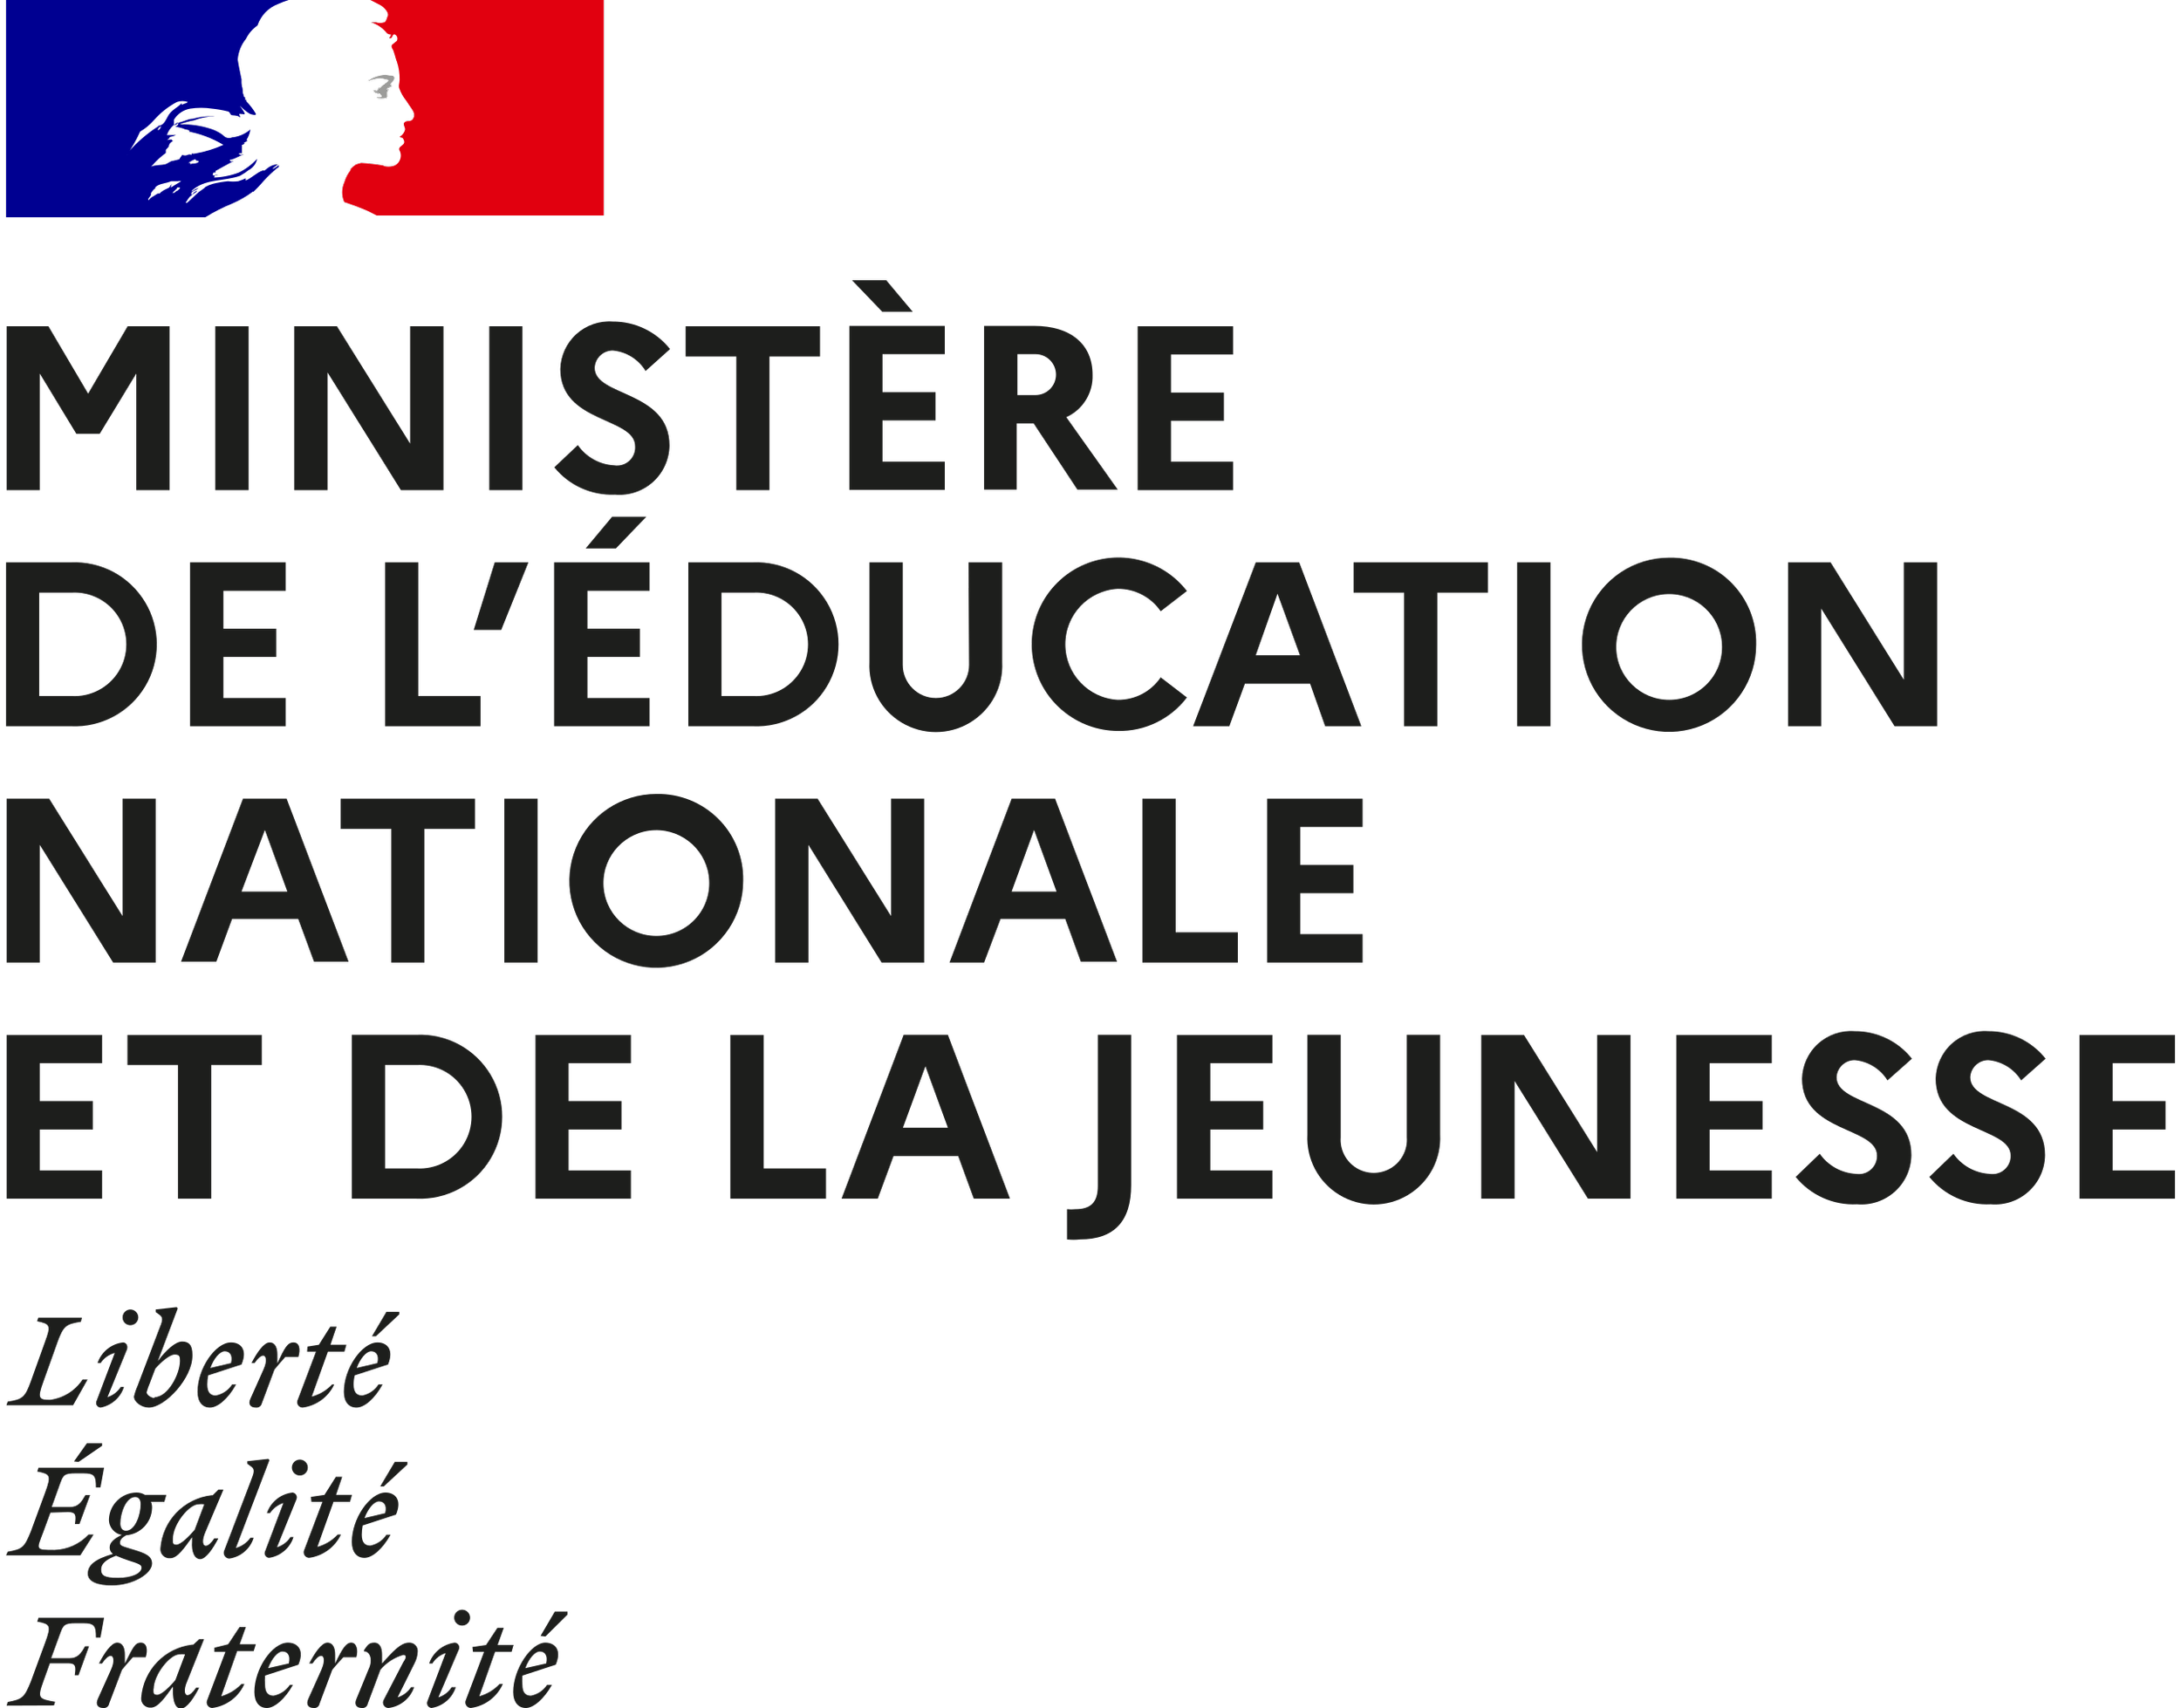 Ministère de l'Education nationale